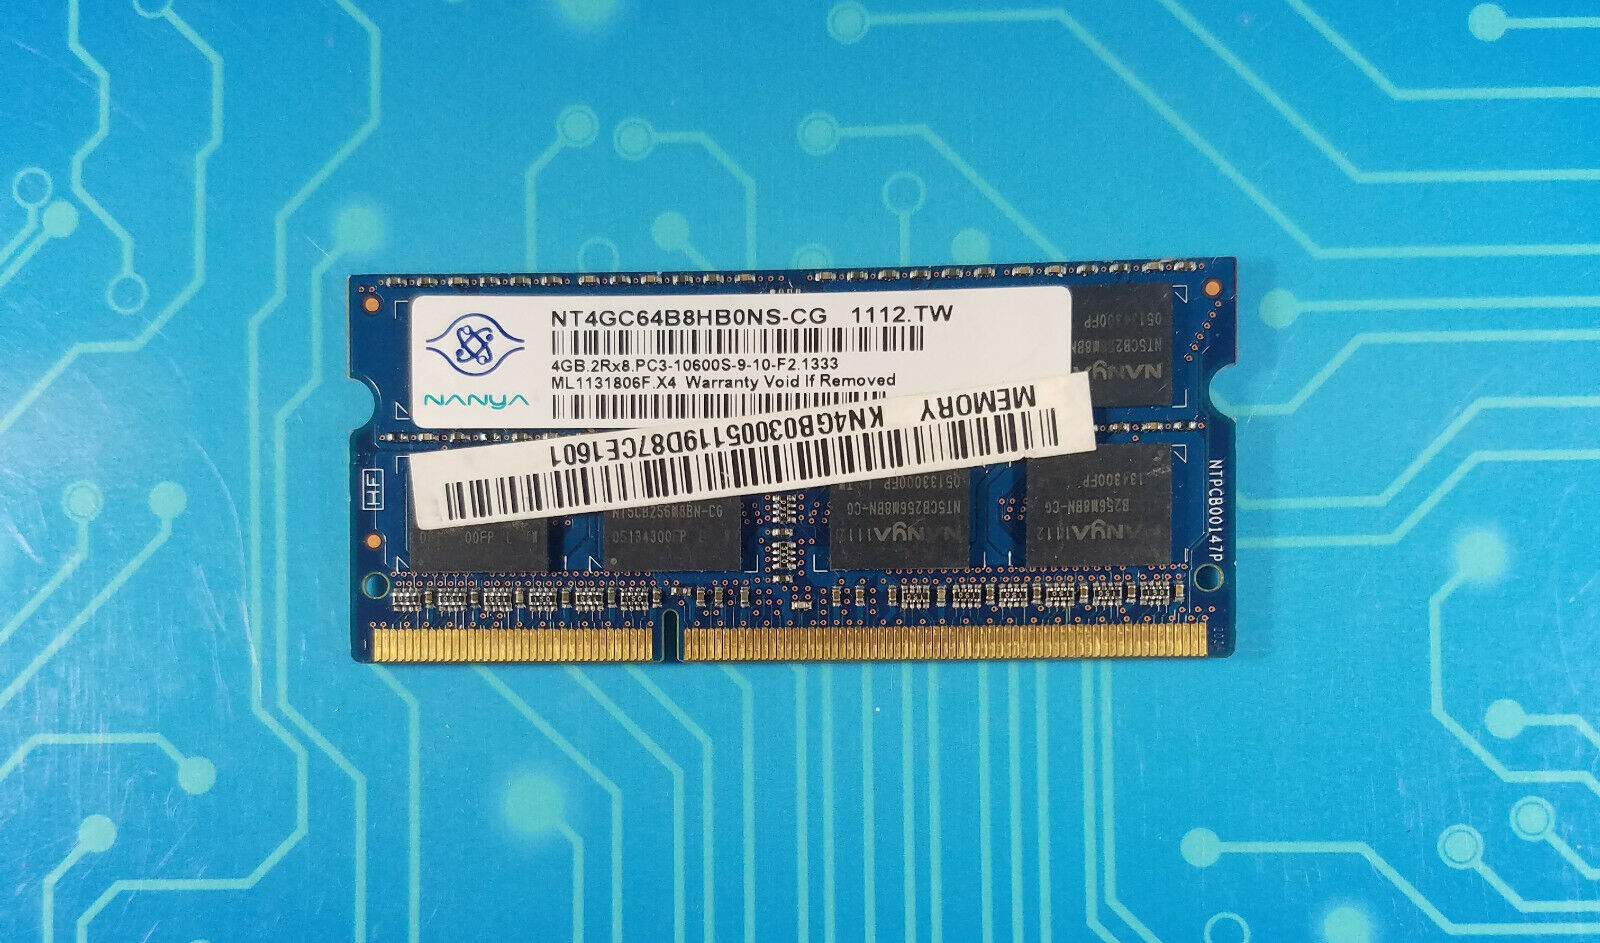 4GB PC3-10600s DDR3-1333MHz 2Rx8 Non-ECC Nanya NT4GC64B8HB0NS-CG